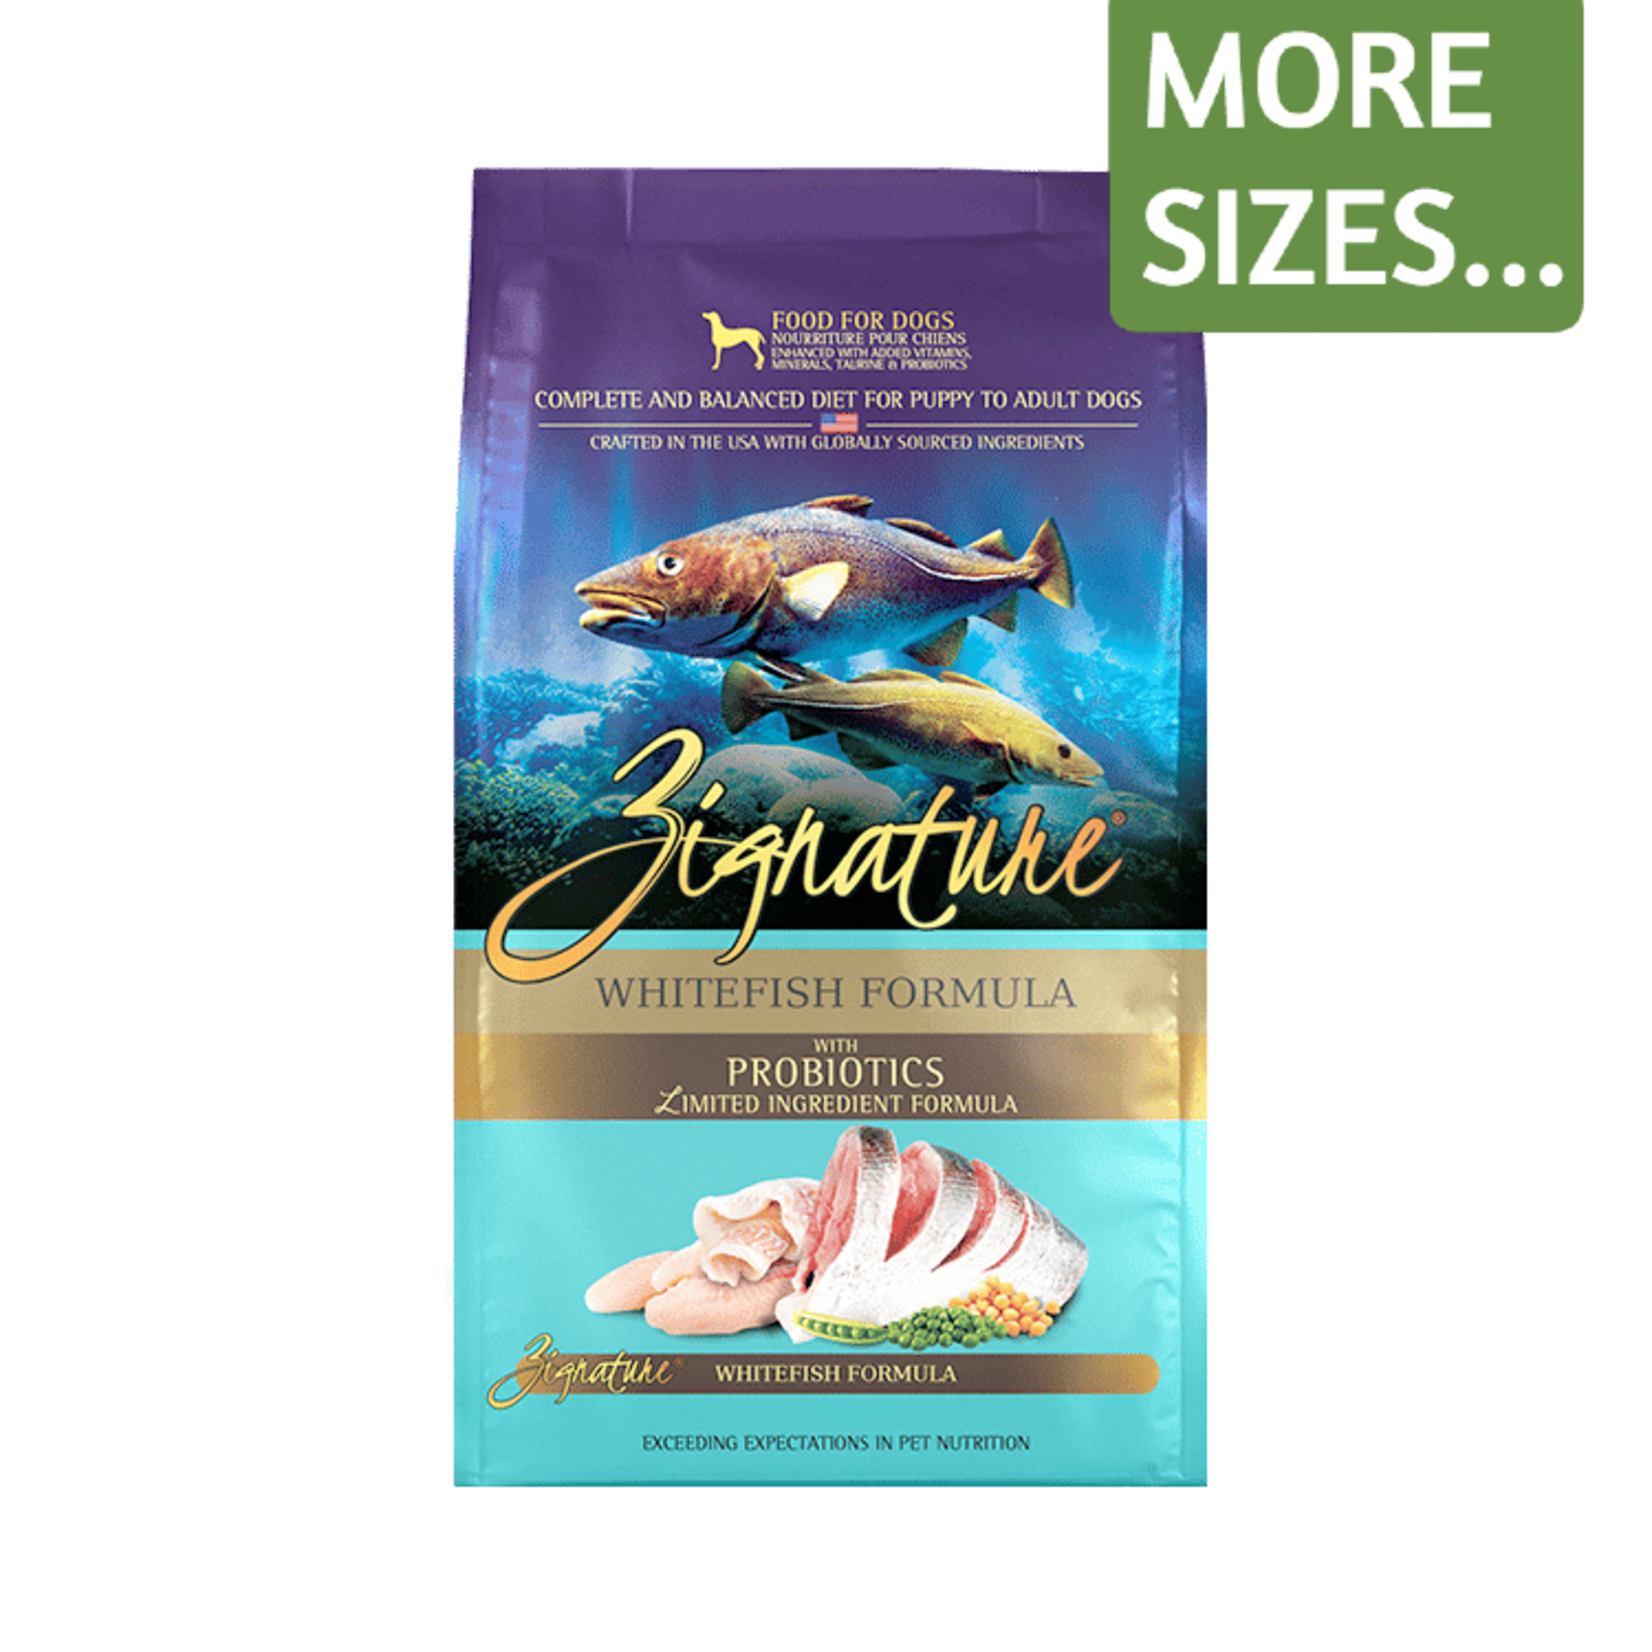 Zignature Zignature Dry Dog Food Limited Ingredient Formula Whitefish Formula Grain Free